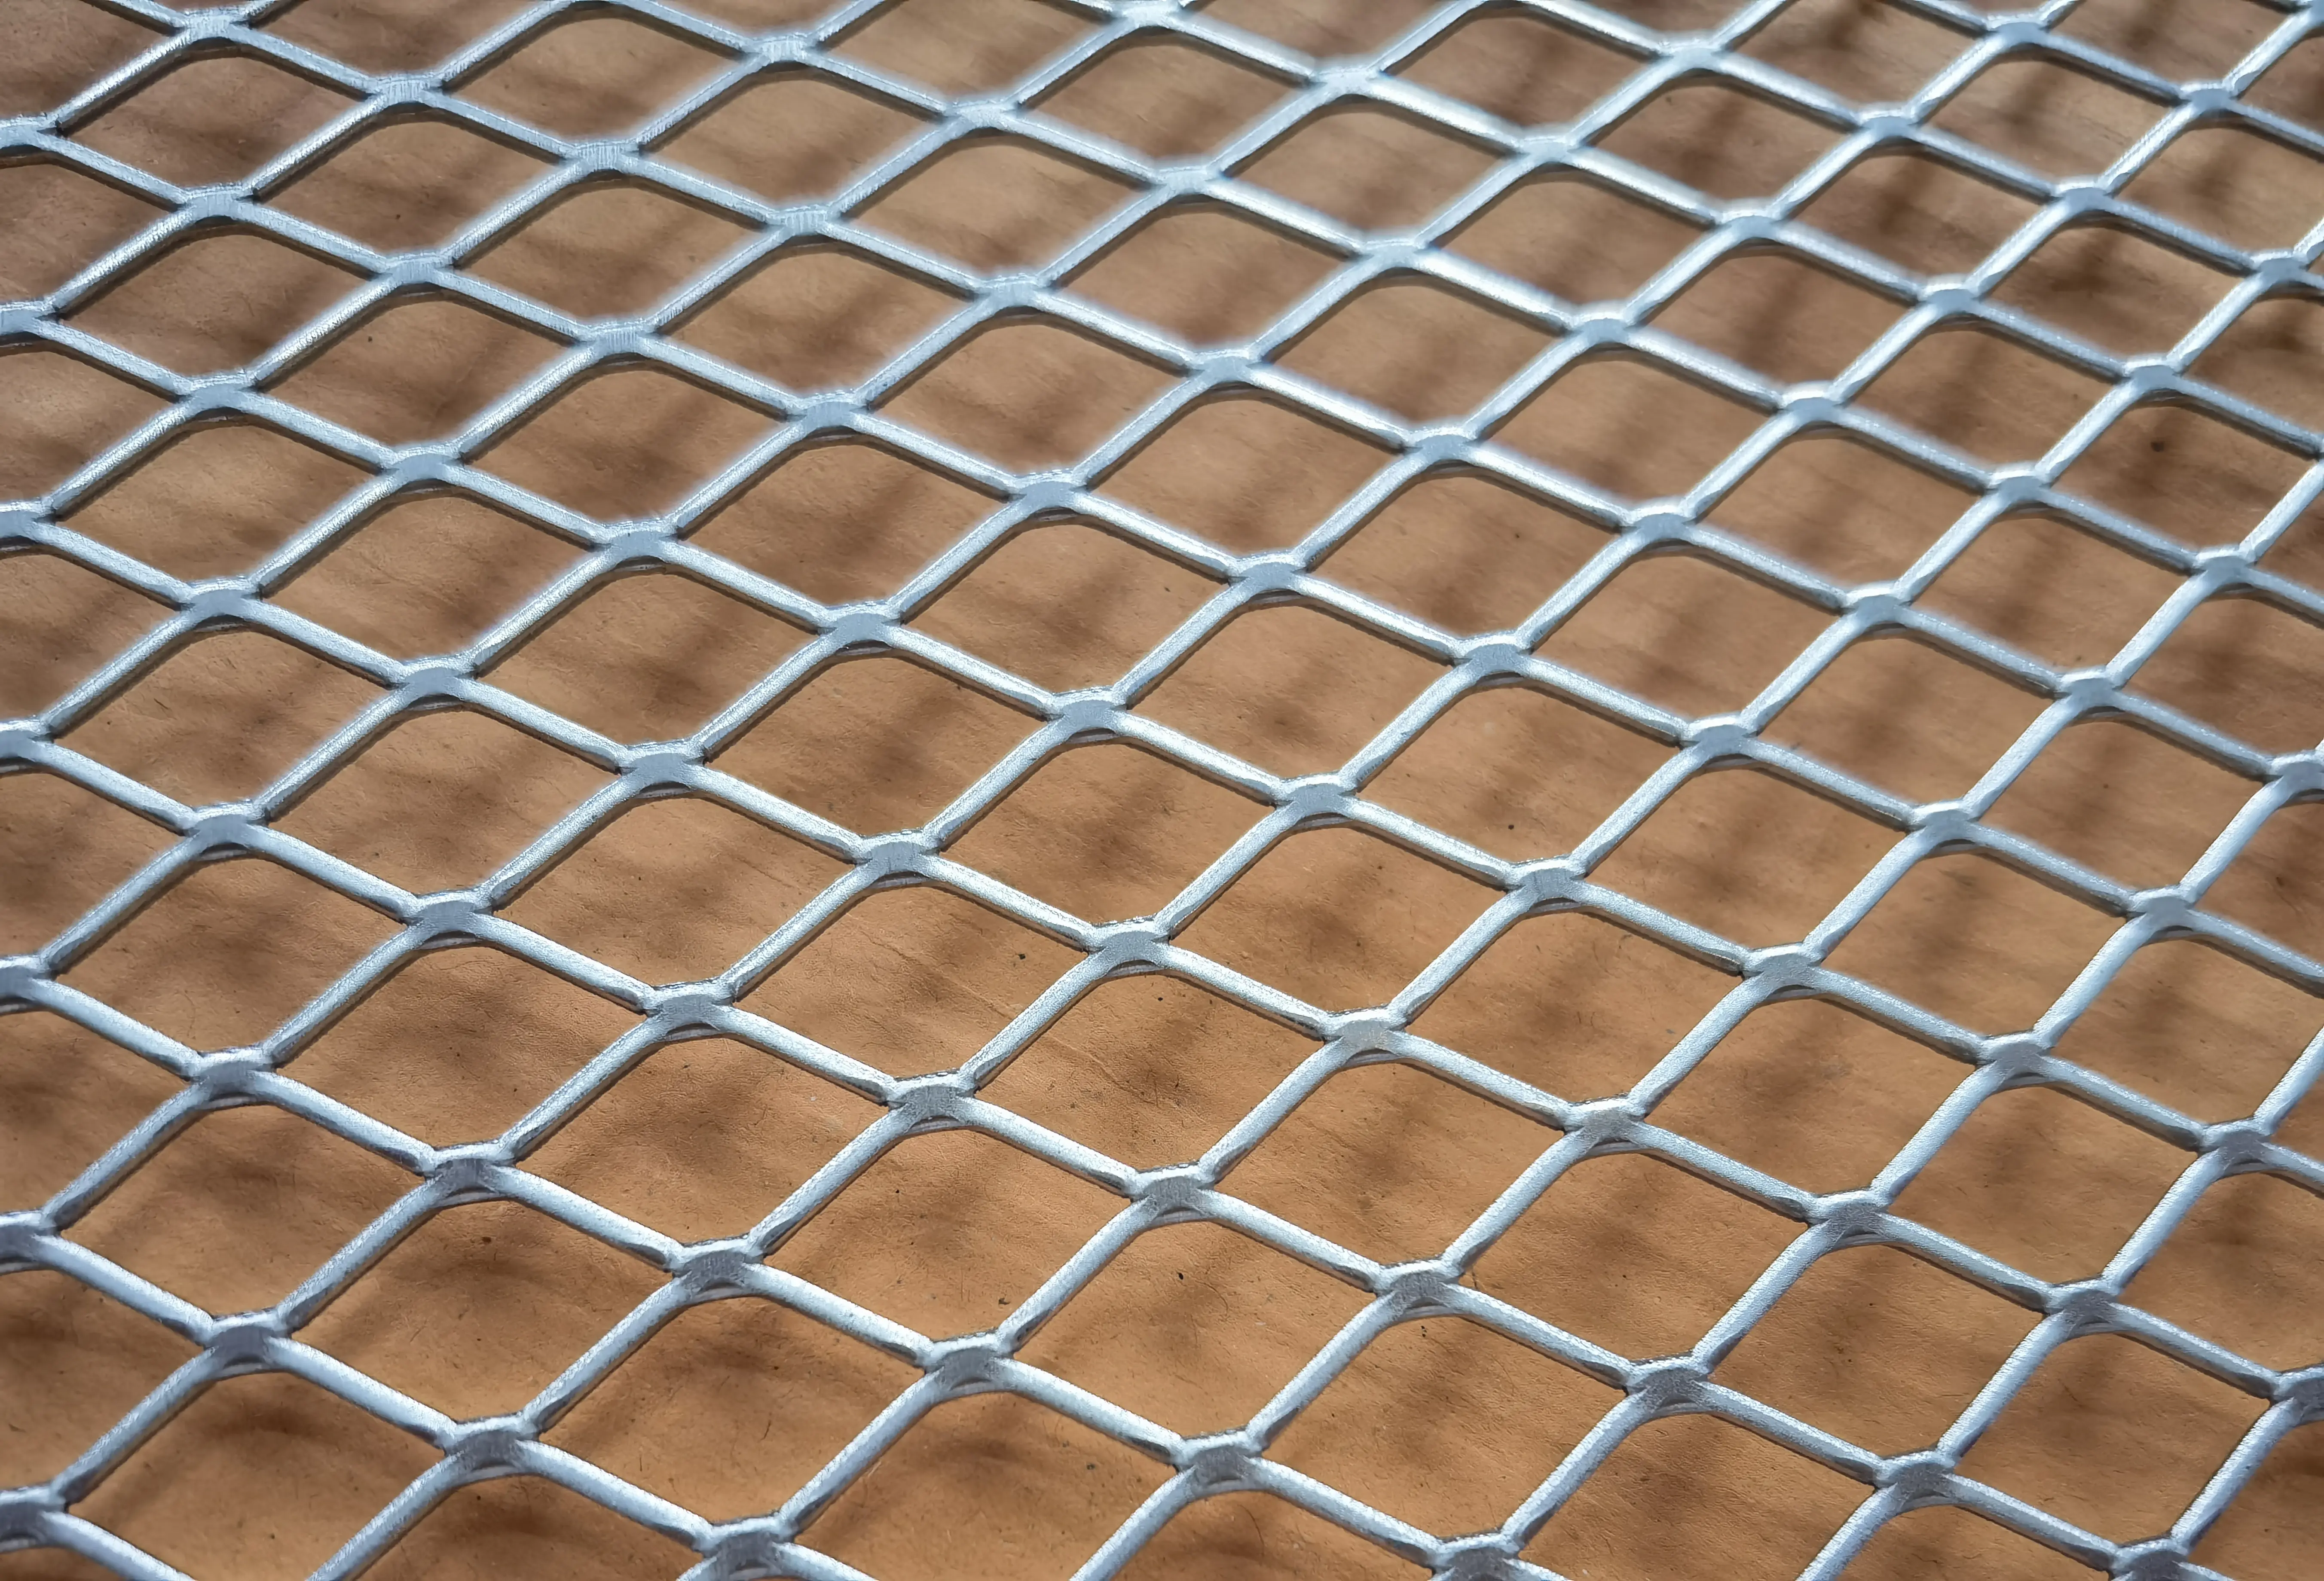 OEM dari jala logam yang diperluas untuk katrij filter udara dan panel pagar grid perlindungan Gang